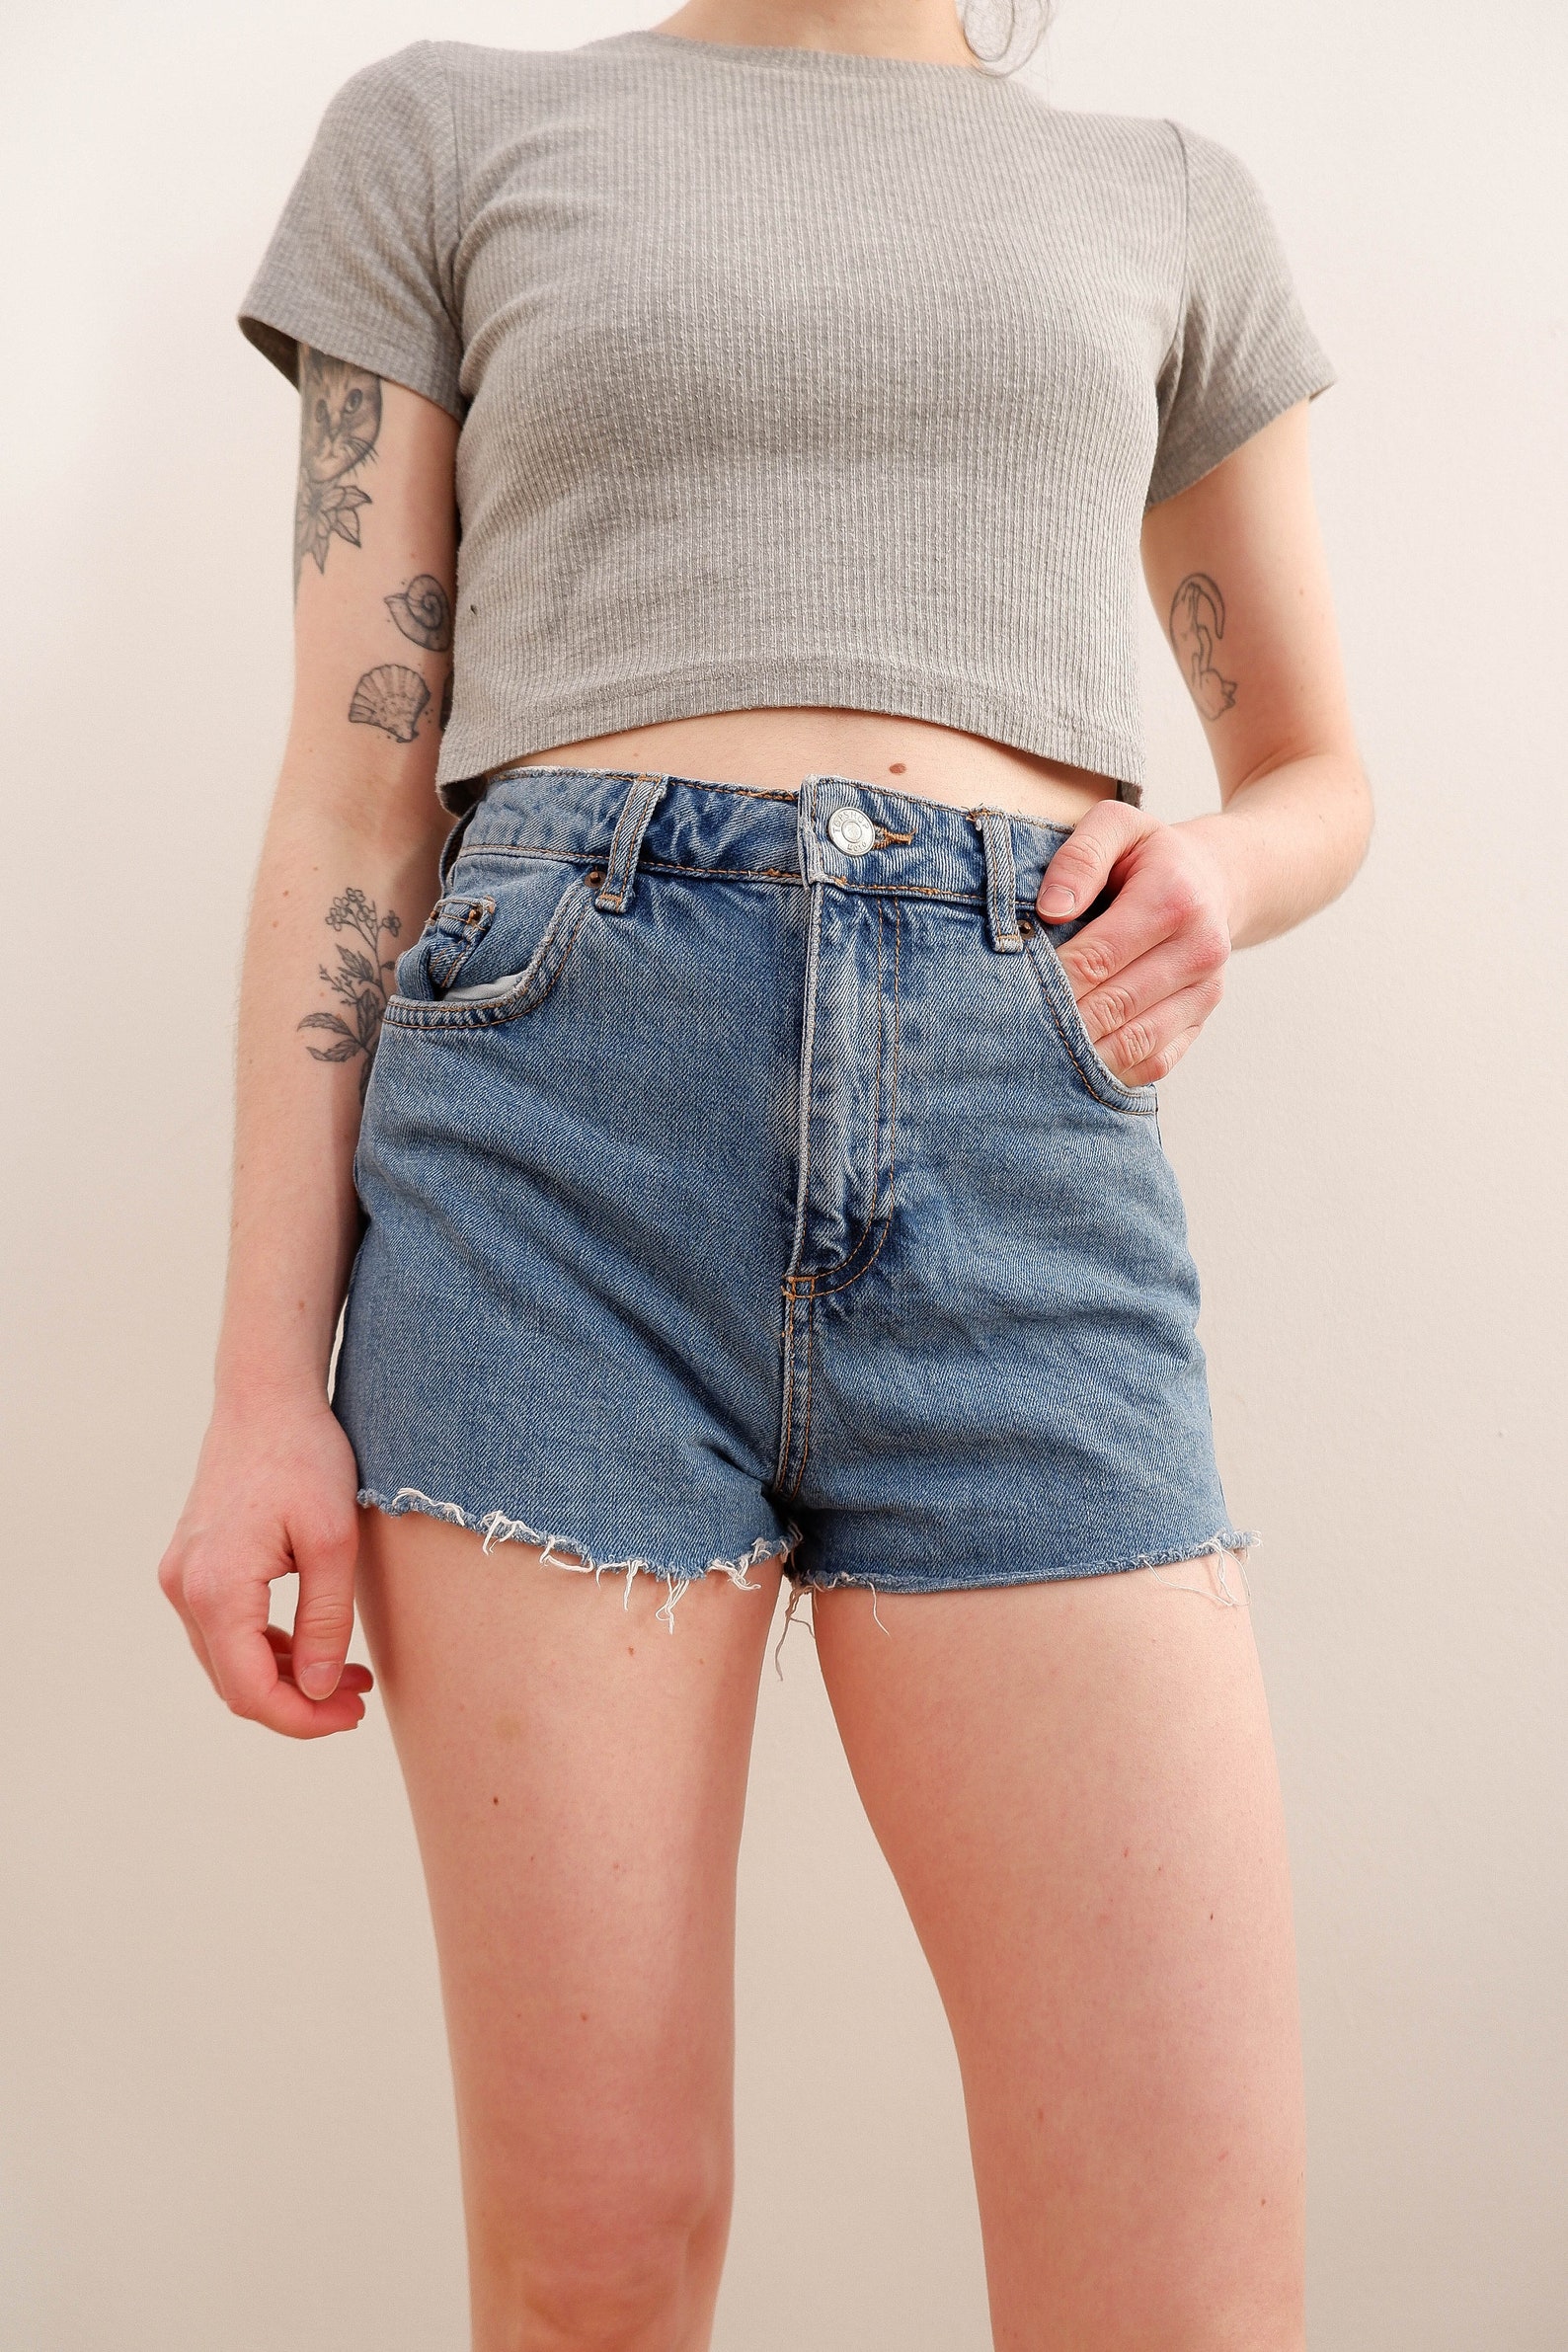 Blue High Waist Jean Short Shorts | Etsy